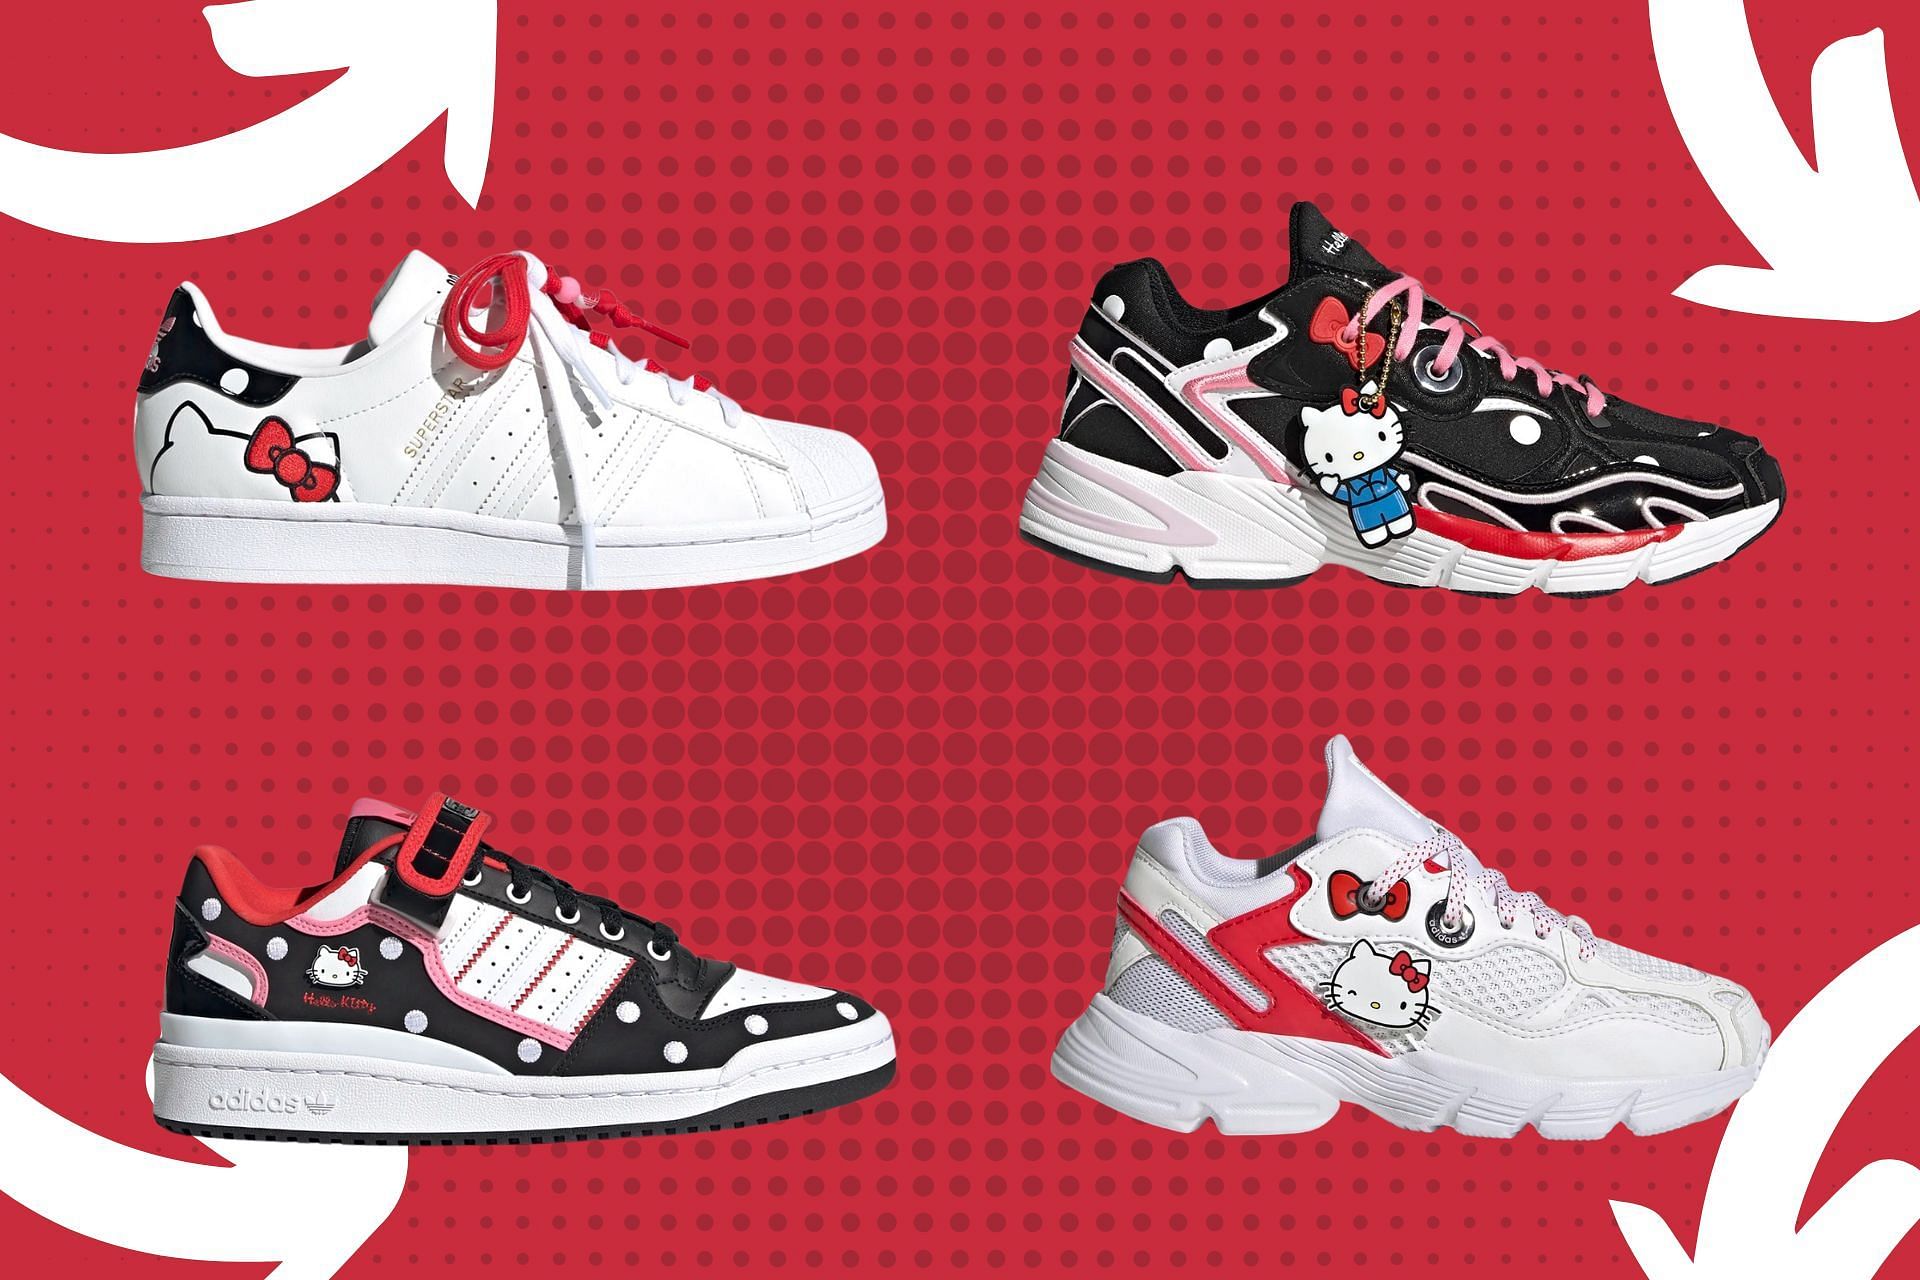 Kawaii Hello Kitty x Adidas Originals footwear collection (Image via Sportskeeda)